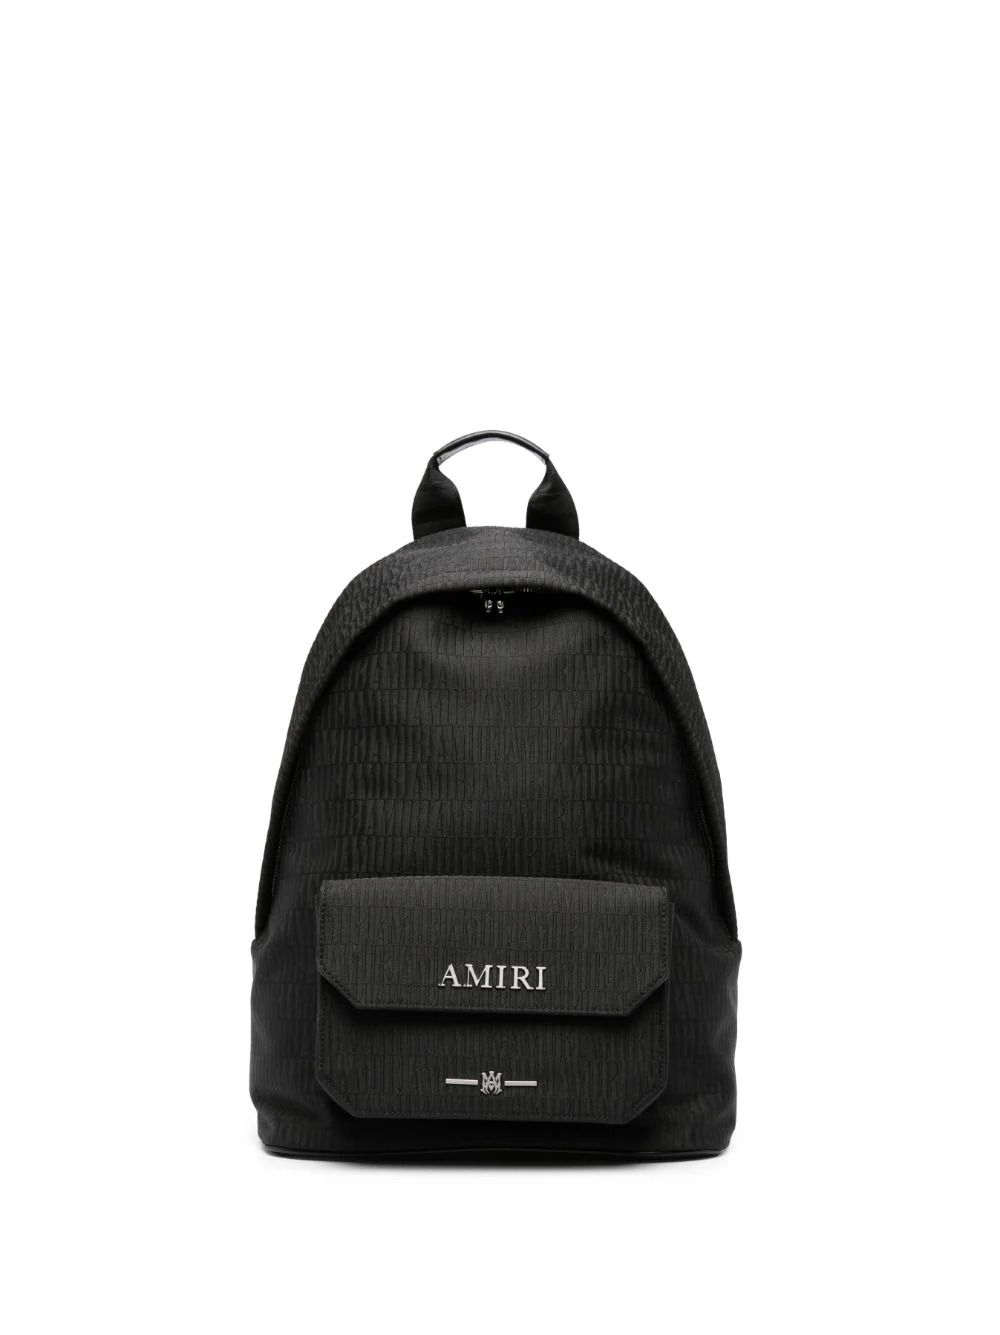 Latest Amiri Backpack